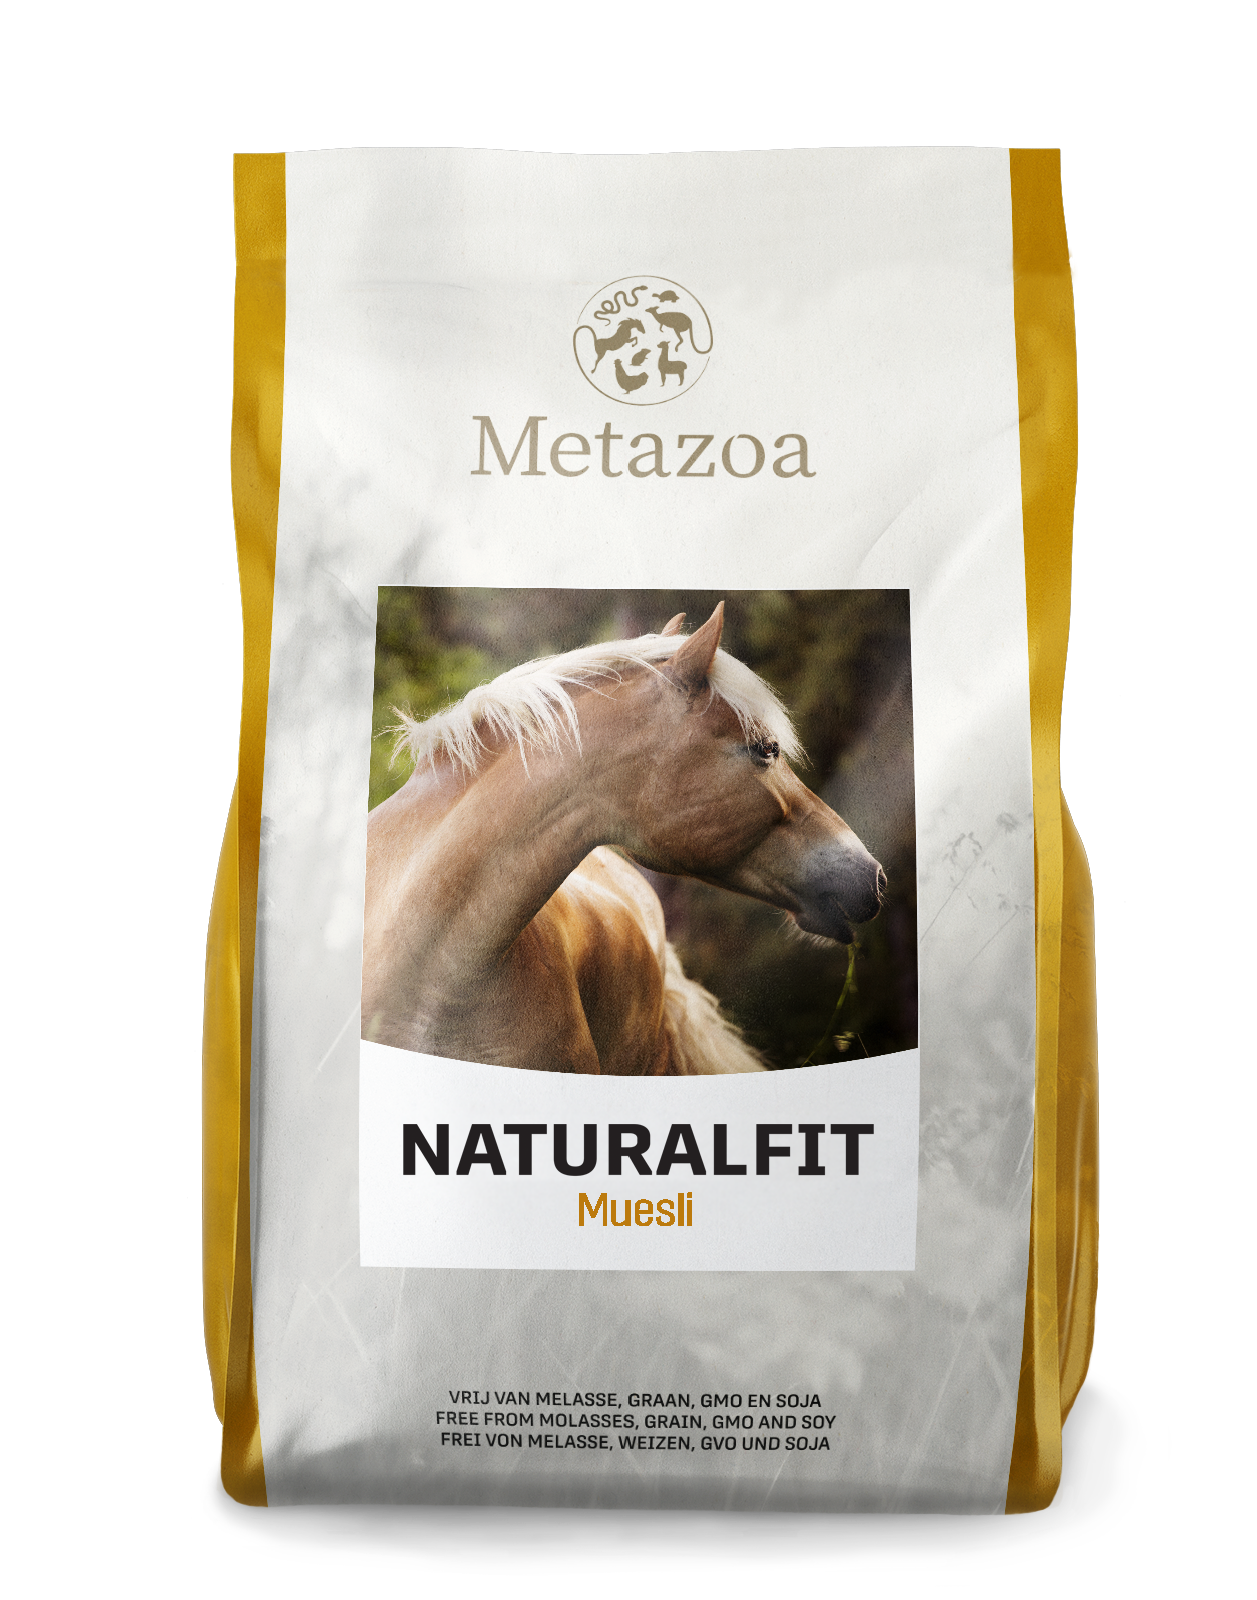 Download Metazoa NaturalFit muesli verpakking 15 kg EAN 4260176355045